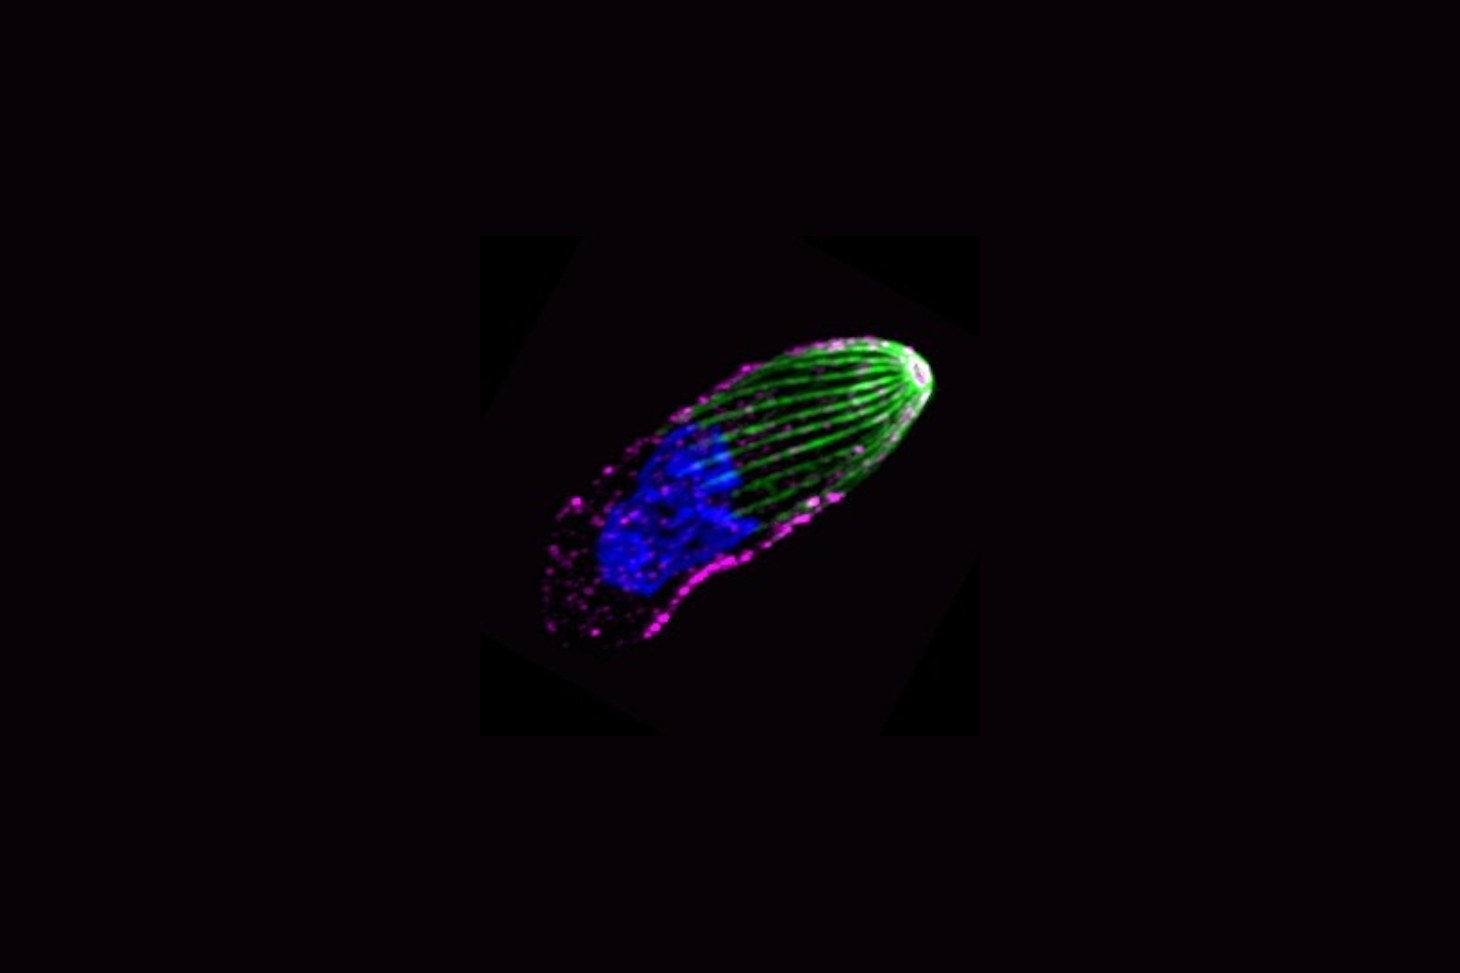 Image en microscopie à super-résolution montrant le toxoplasme en extension Le système ressort des microtubules (vert) est complètement déchargé, l’appareil moteur (rose) est au repos et le noyau (bleu) est allongé selon l’axe majeur du parasite. © IAB (C